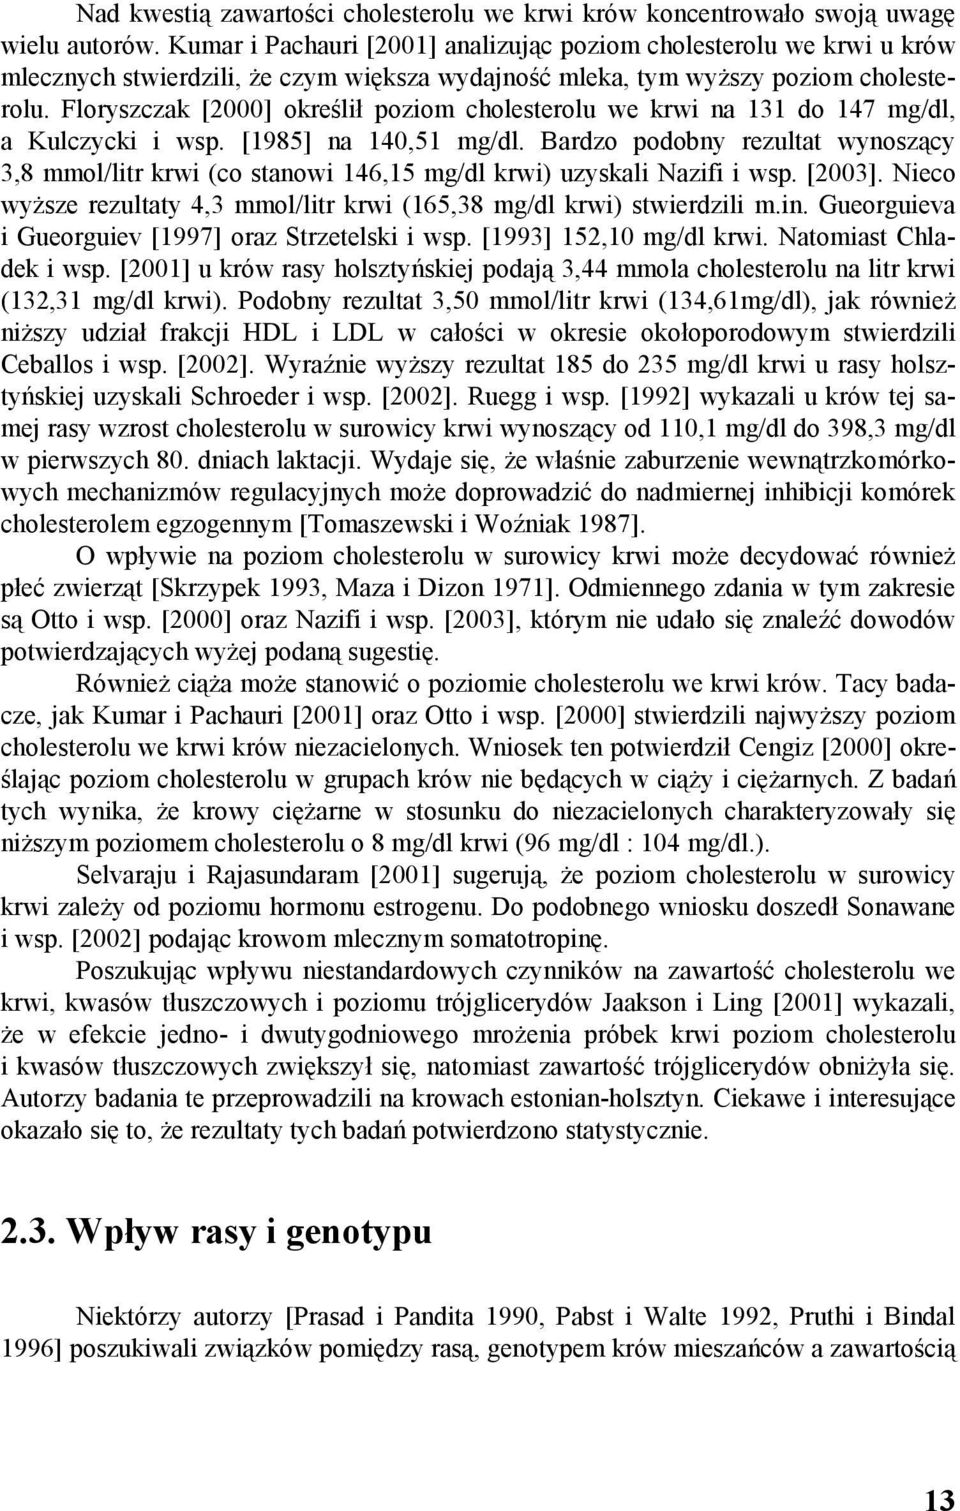 Floryszczak [2000] określił poziom cholesterolu we krwi na 131 do 147 mg/dl, a Kulczycki i wsp. [1985] na 140,51 mg/dl.